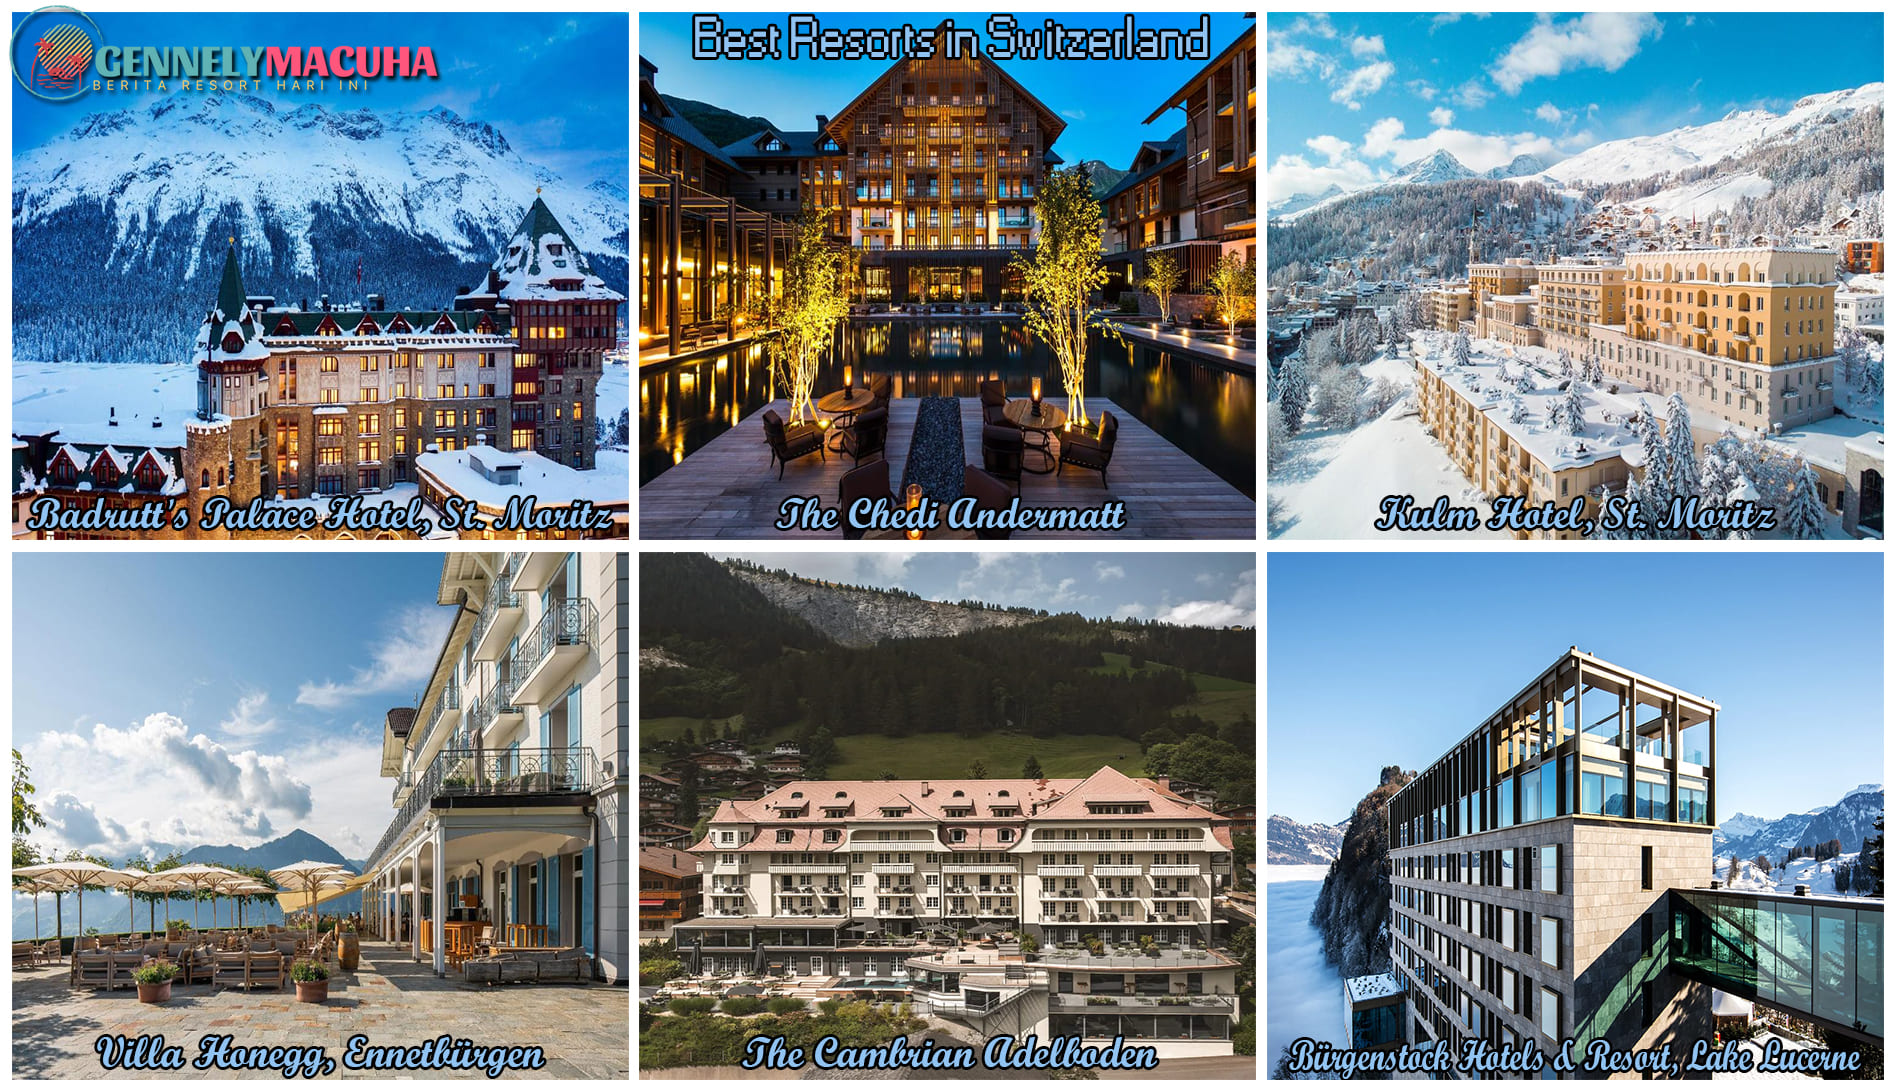 Exploring the Best Resorts in Switzerland